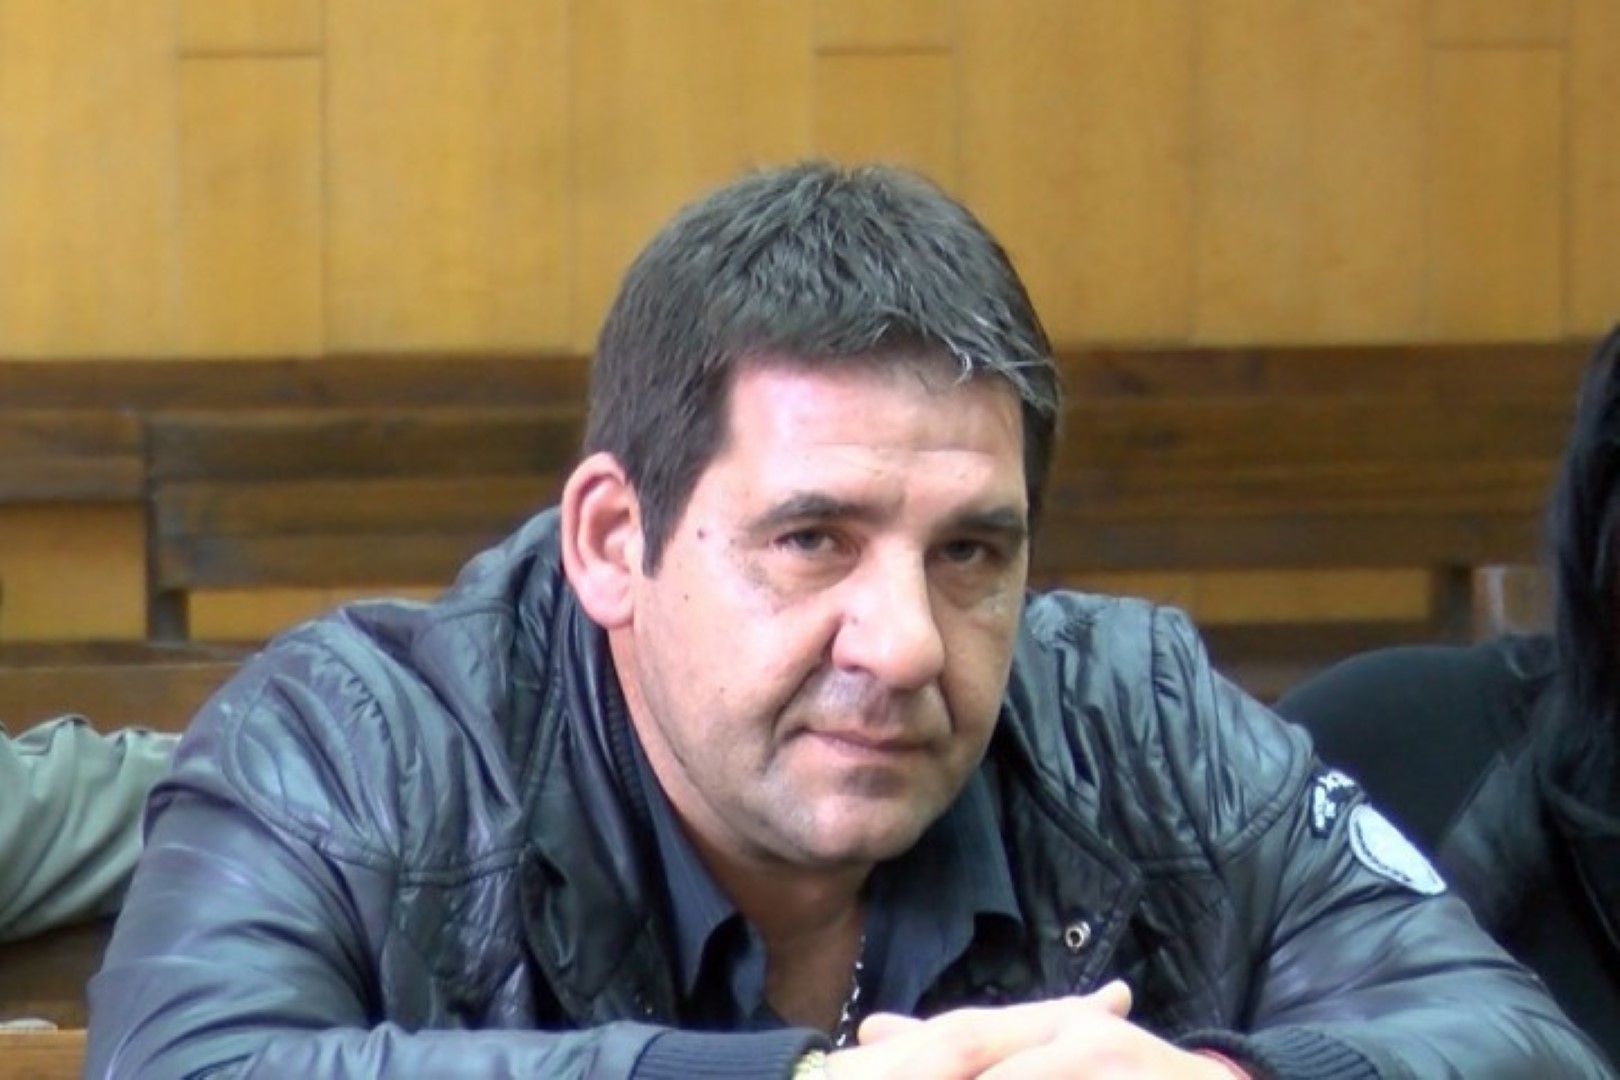 Христо Тиляшев, който по време на инцидента беше на 42 години, също пострада